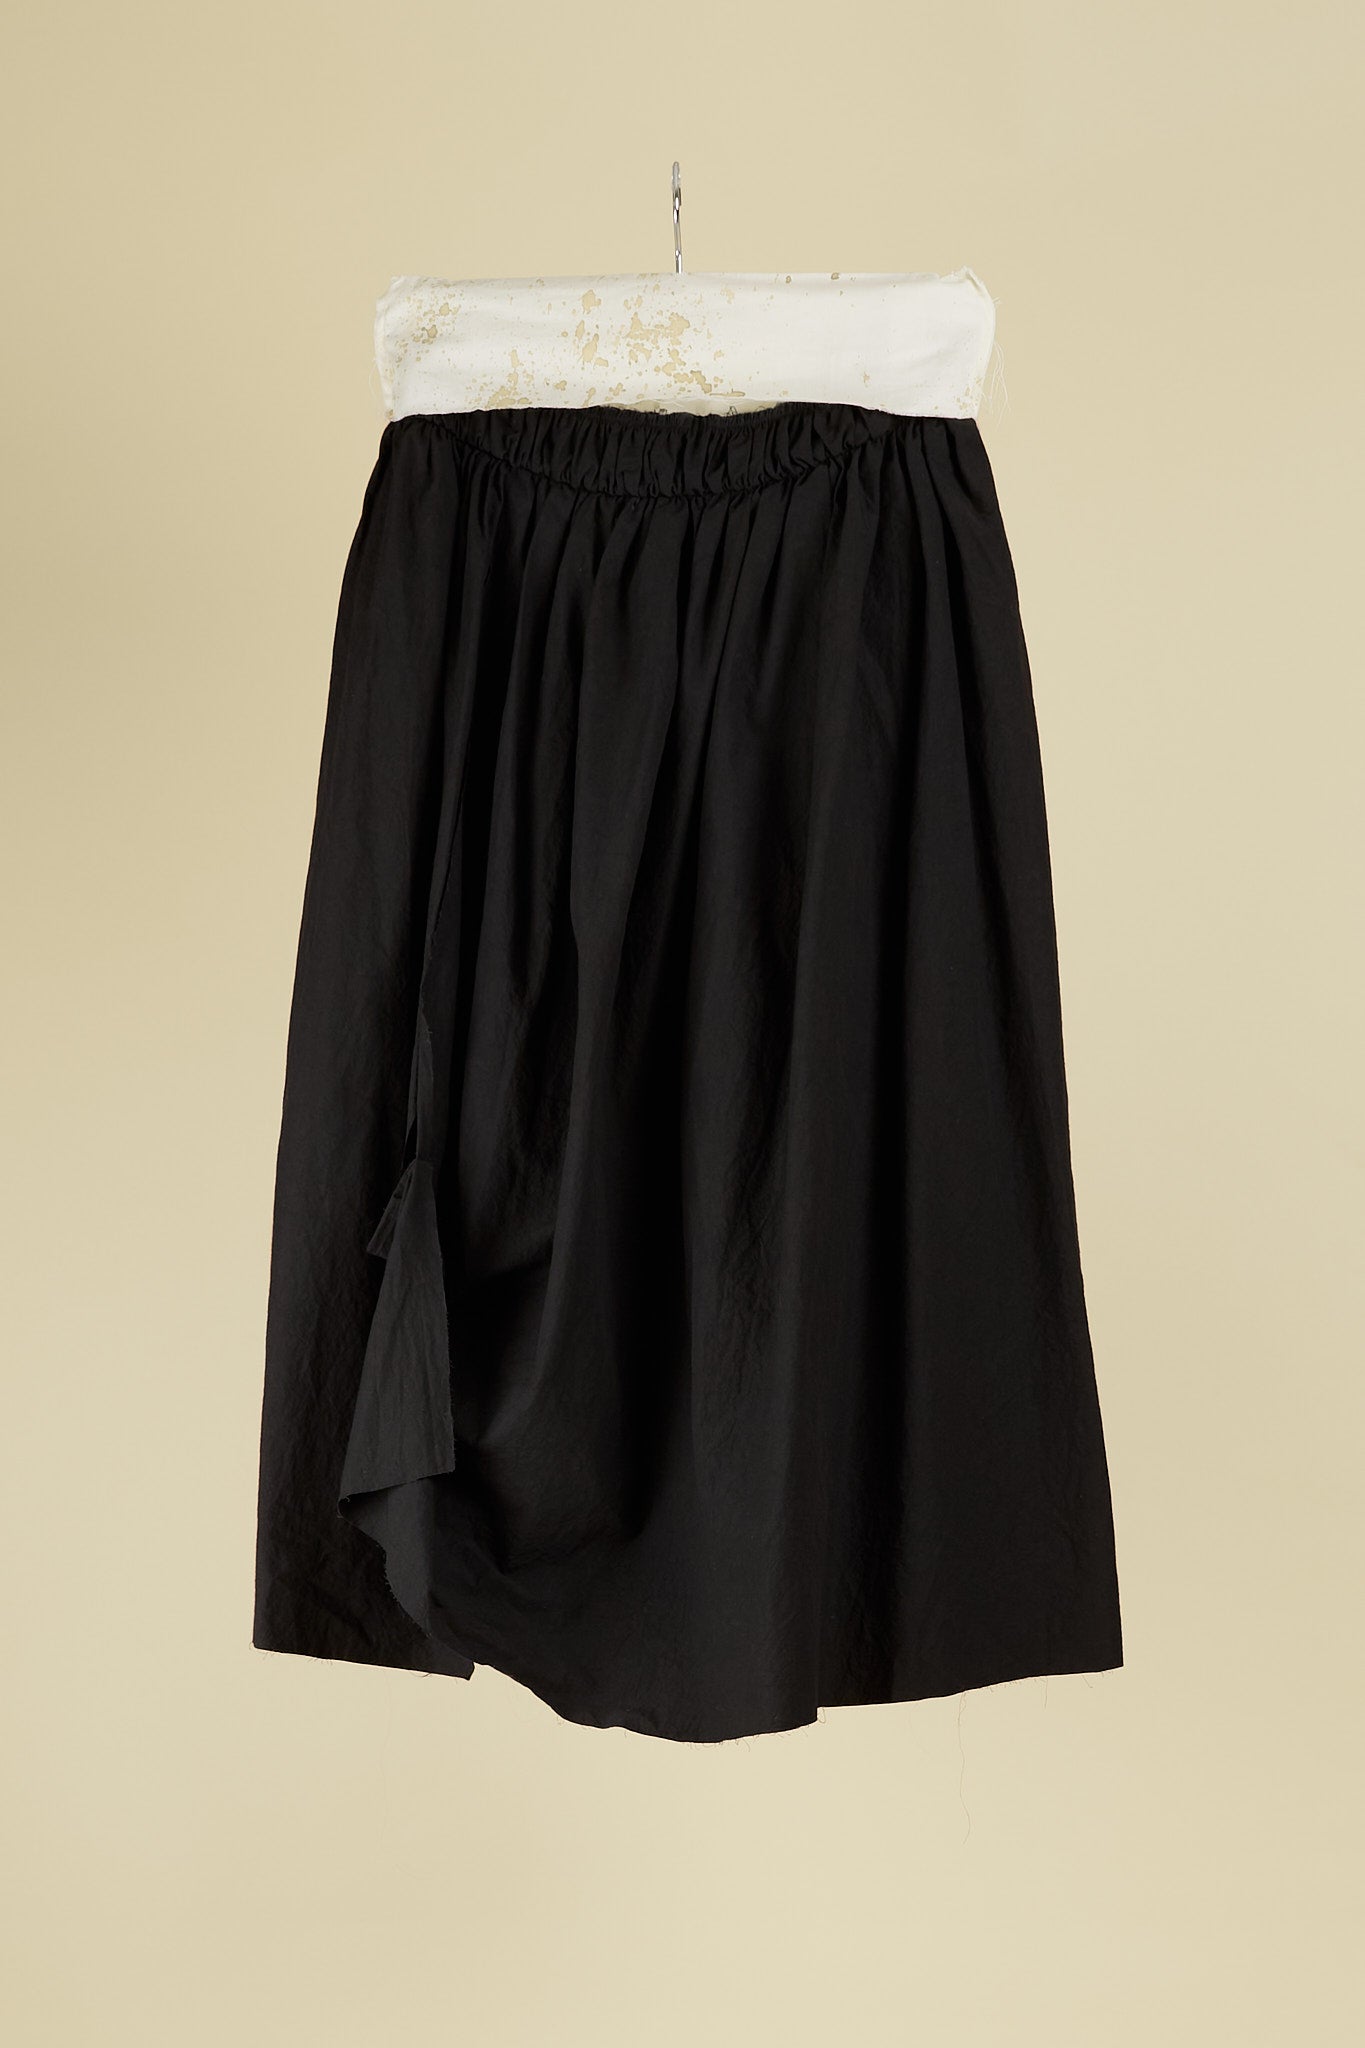 Geranet Skirt